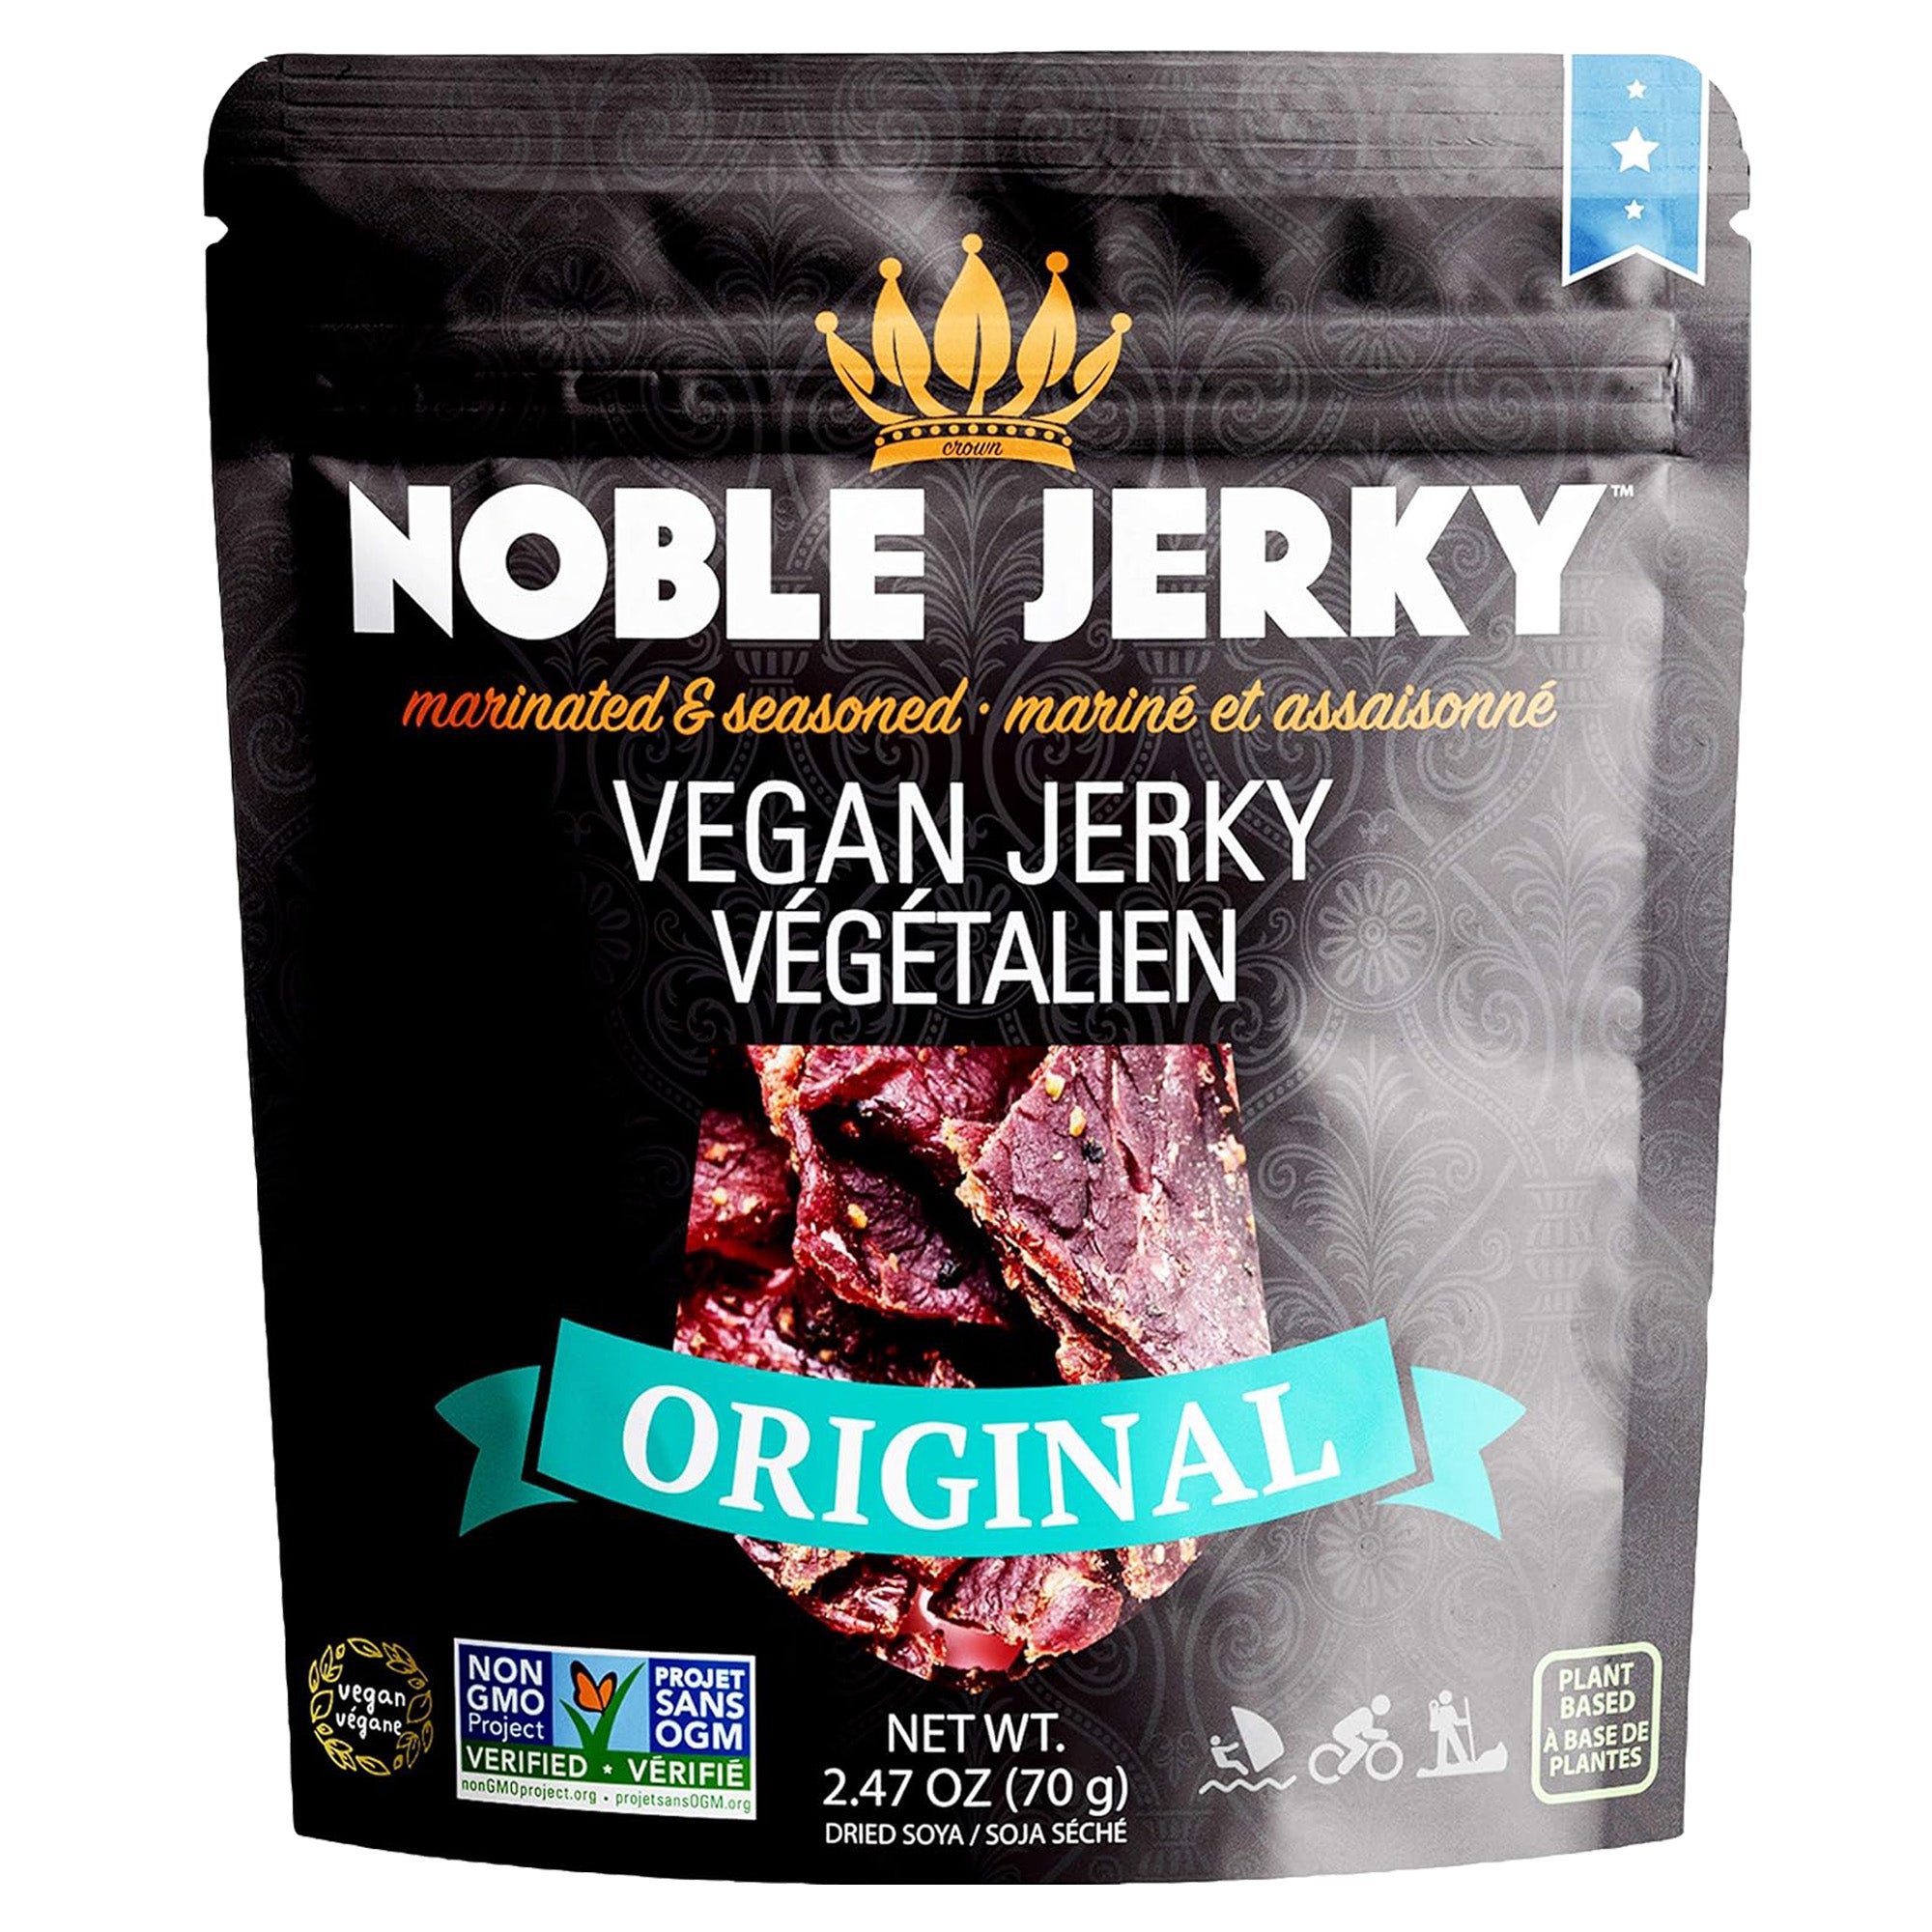 Original Vegan Jerky